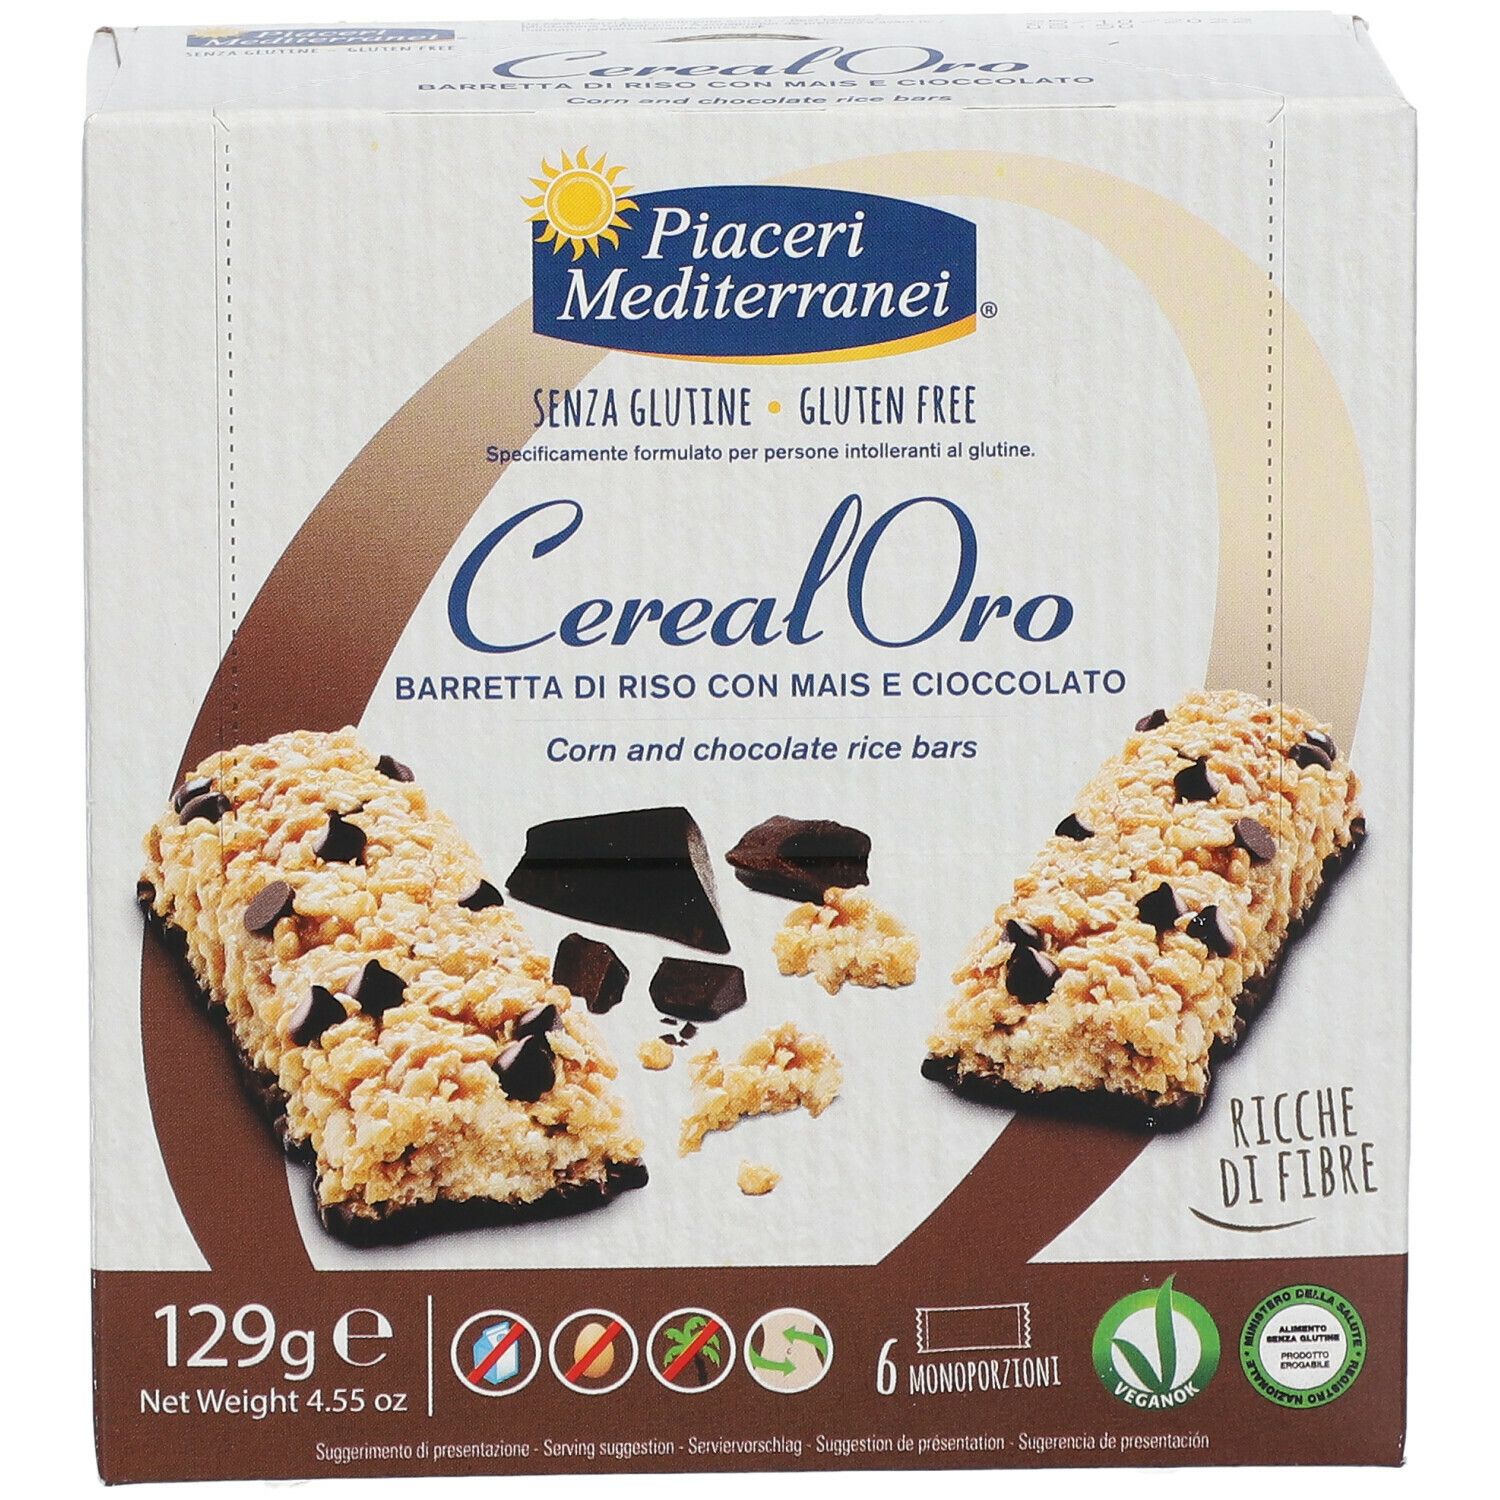 Piaceri Mediterranei® Cereal Oro Barretta di Riso con Mais e Cioccolato